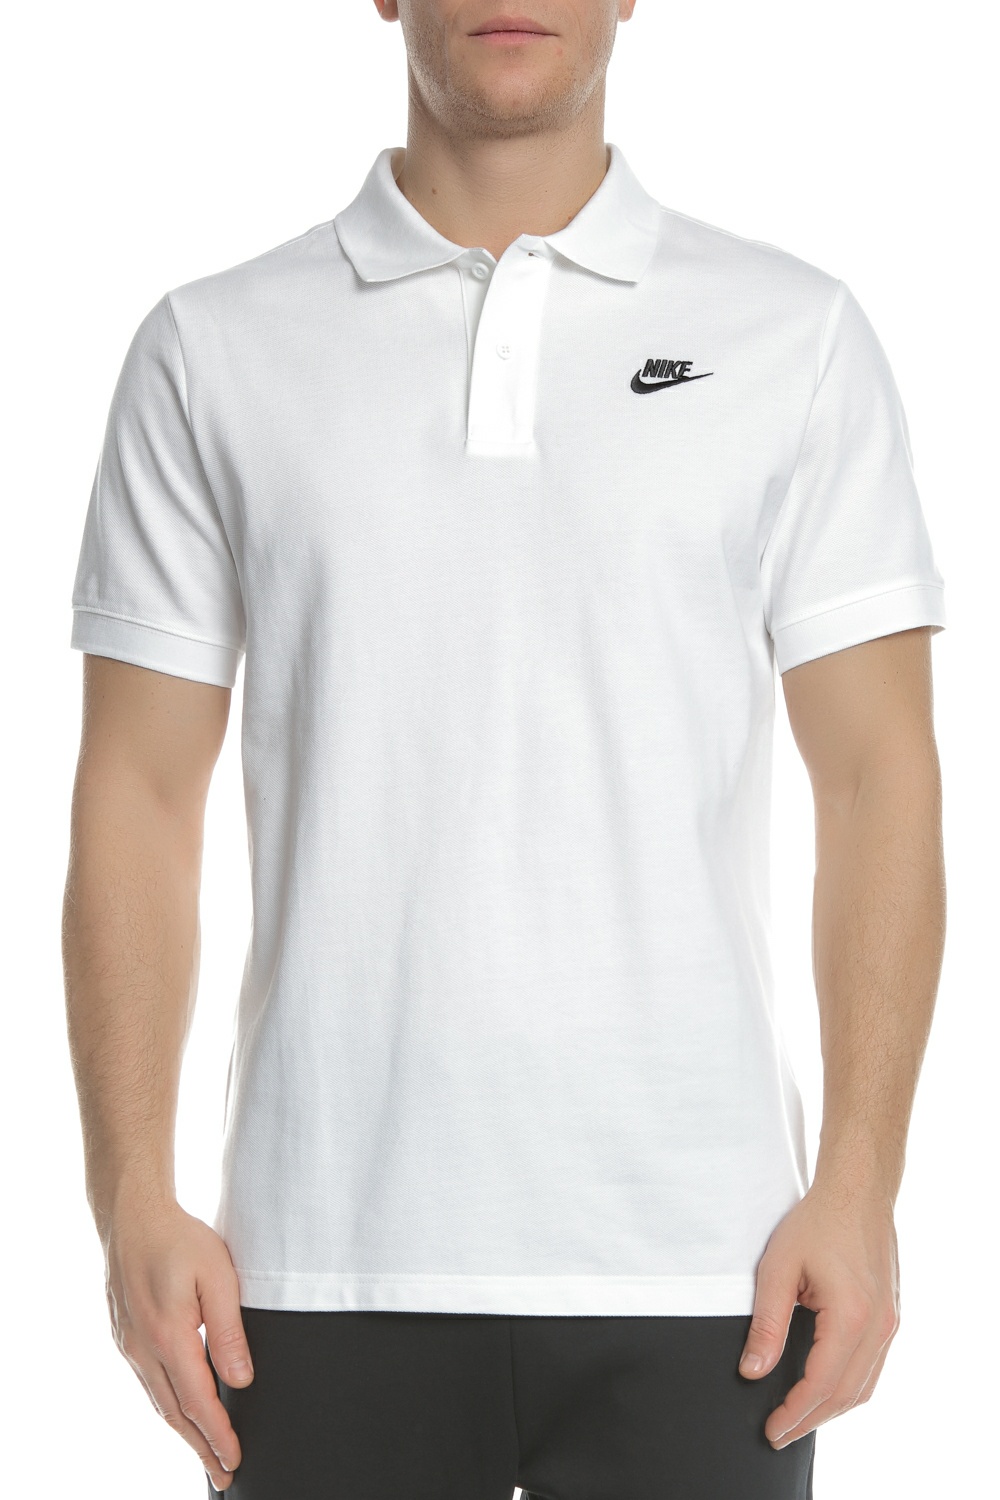 Ανδρικά/Ρούχα/Μπλούζες/Πόλο NIKE - Ανδρική polo μπλούζα NIKE MATCHUP PQ λευκή